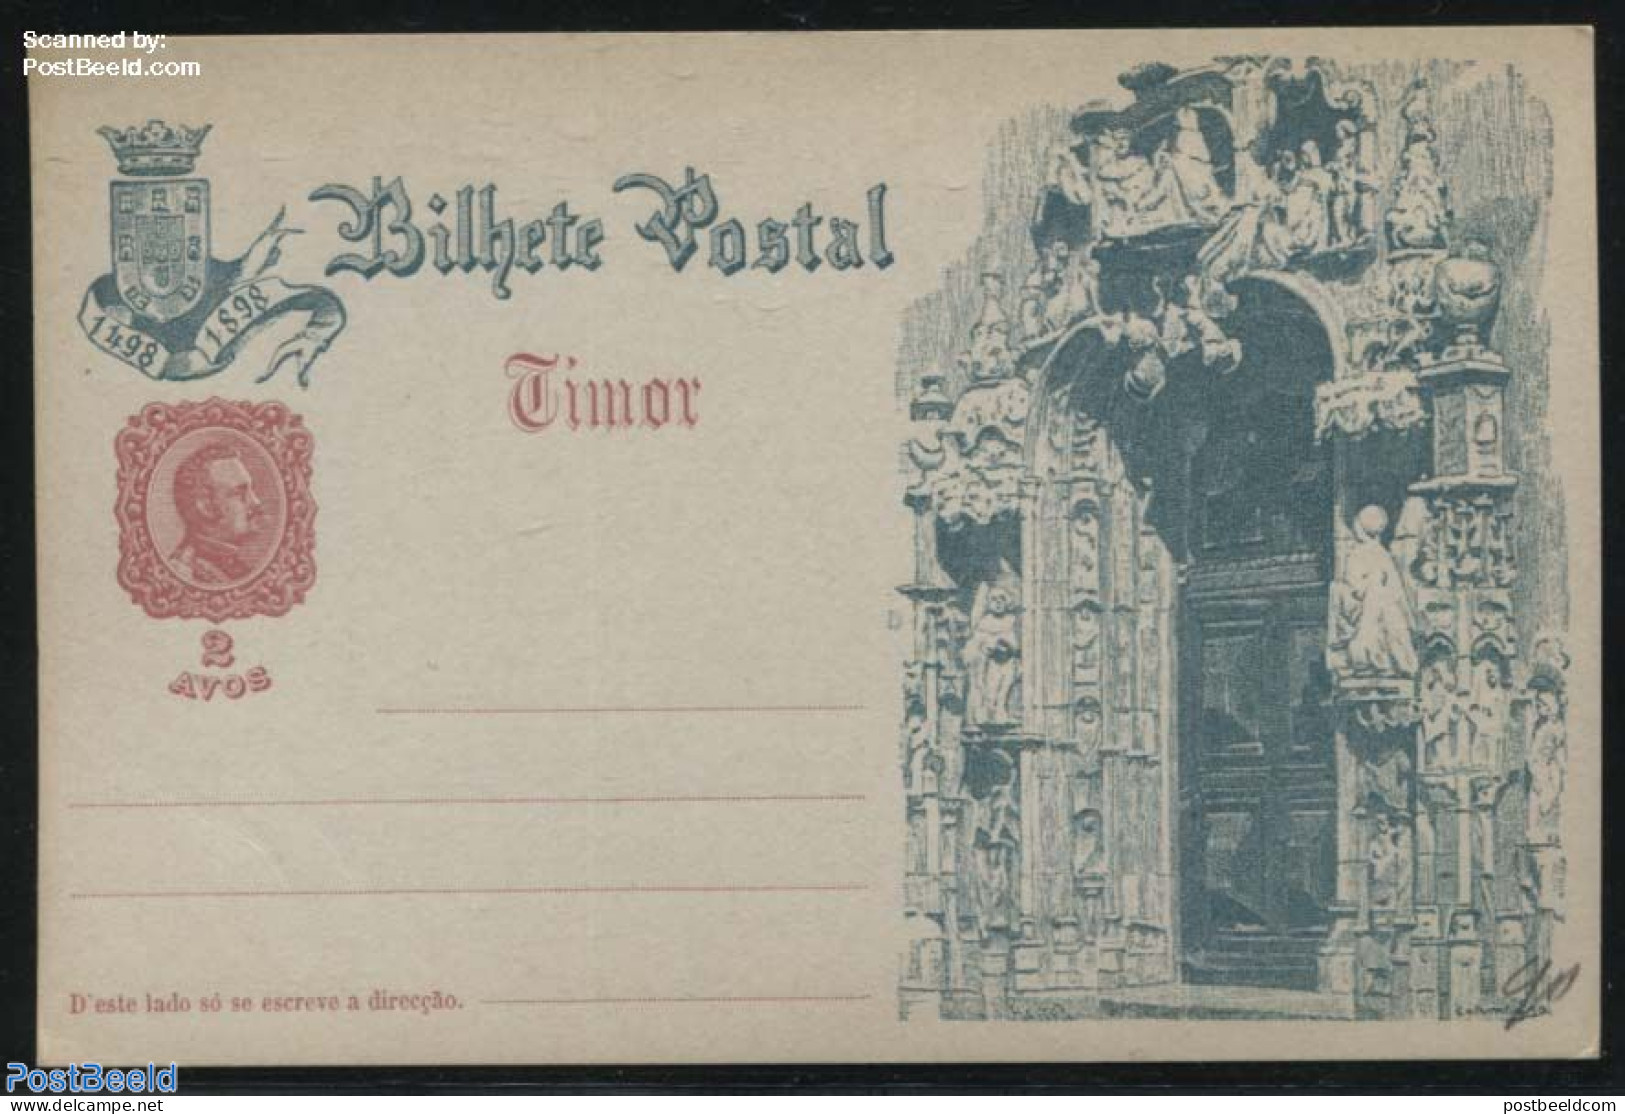 Timor 1898 Illustrated Postcard, 2 Avos, Portal, Unused Postal Stationary - Timor Oriental